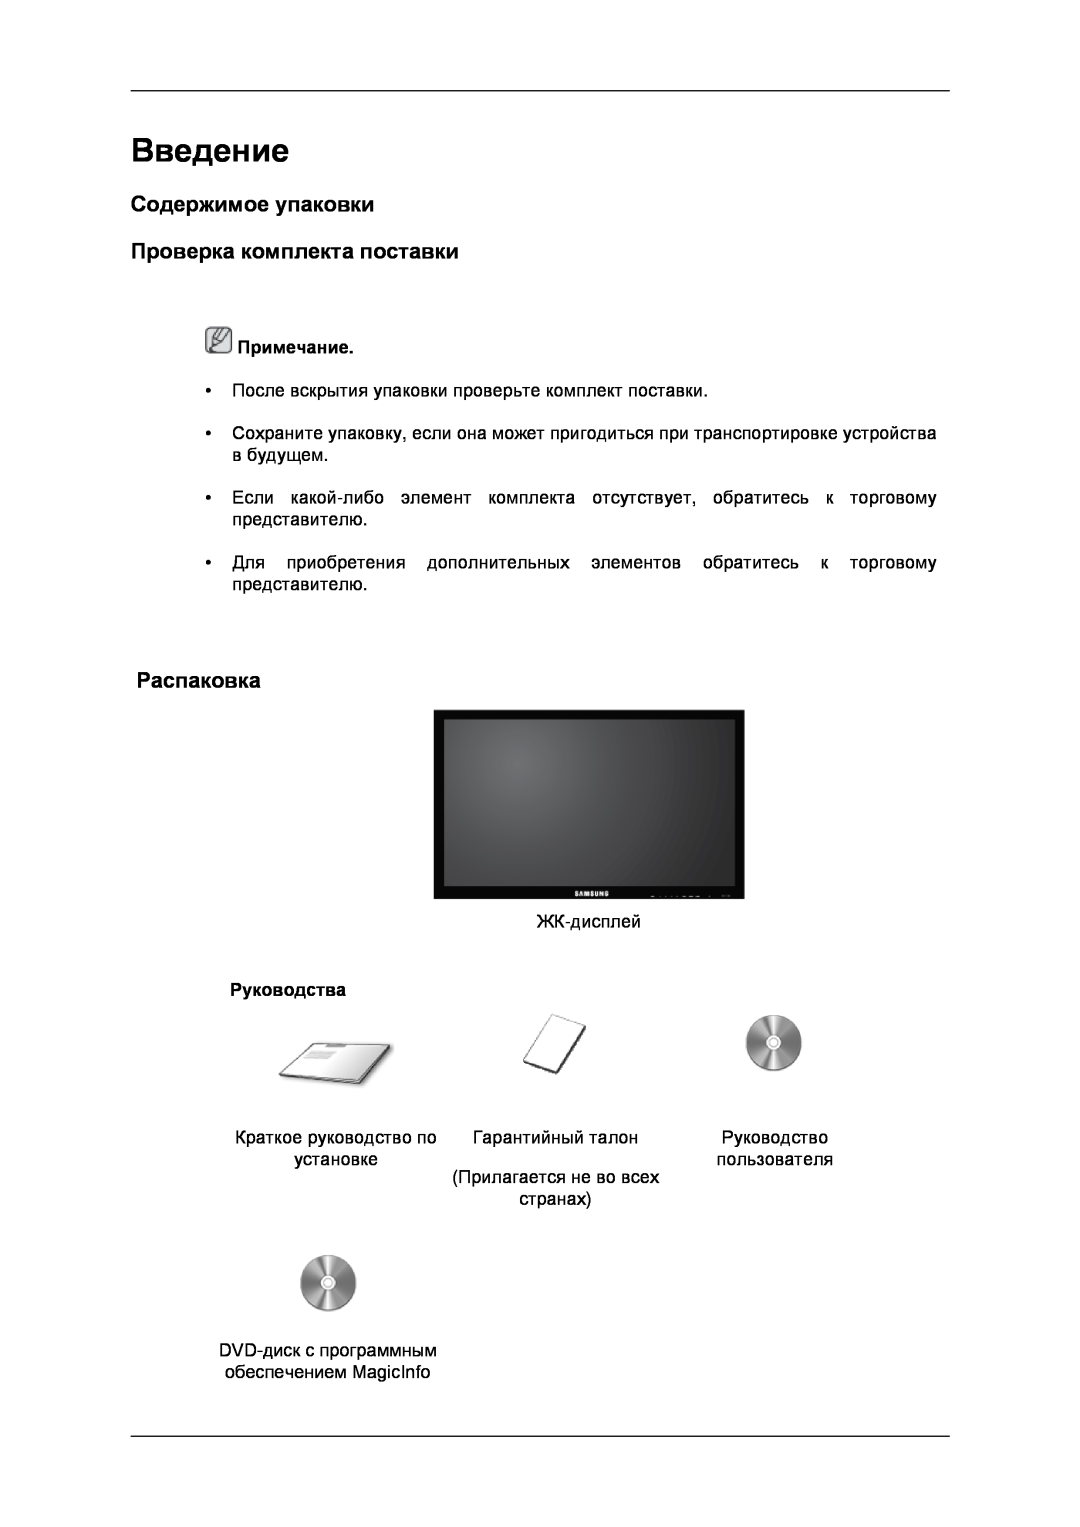 Samsung LH32CRSMBD/EN manual Введение, Содержимое упаковки Проверка комплекта поставки, Распаковка, Руководства, Примечание 